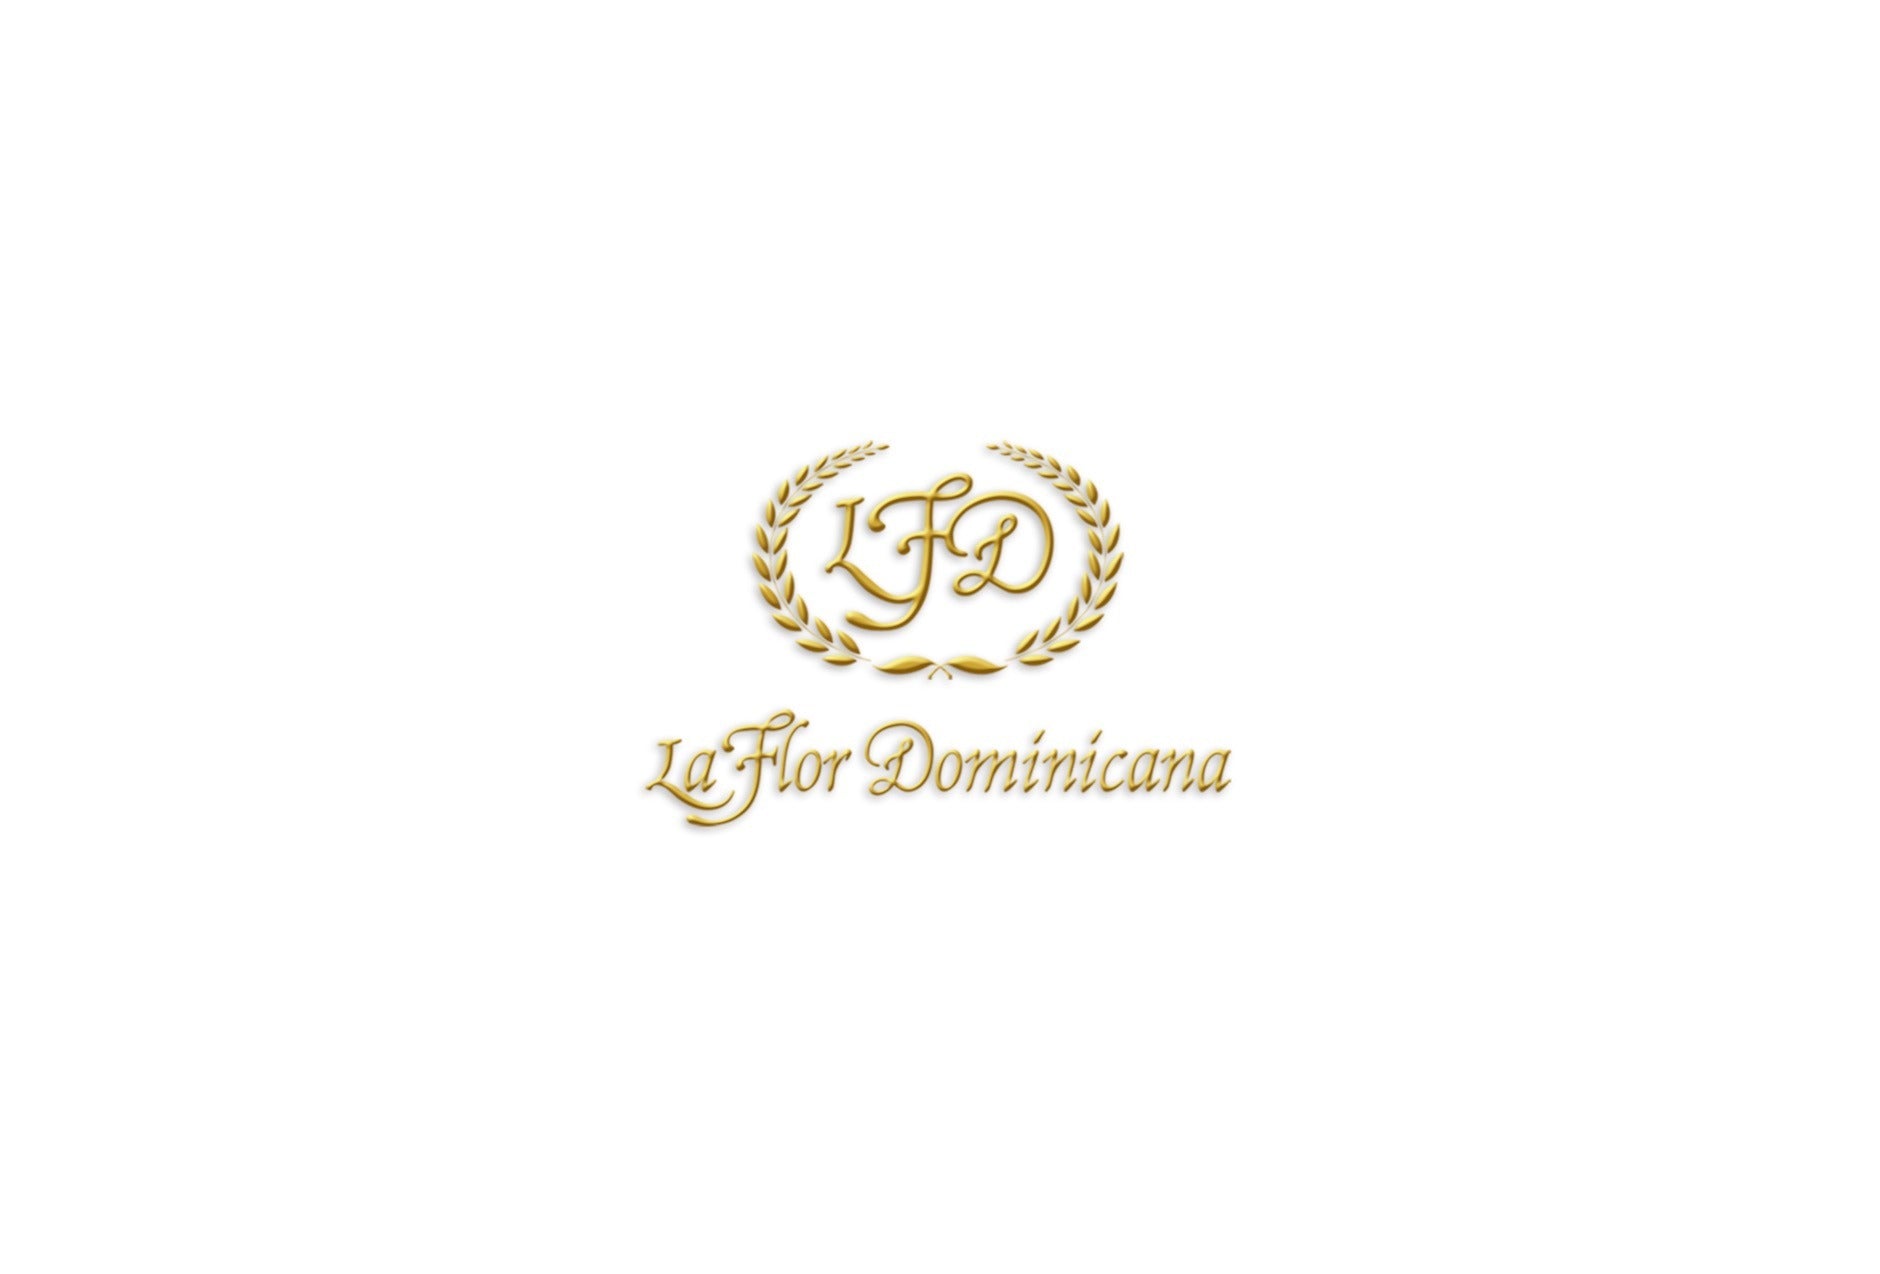 La Flor Dominicana Coronado